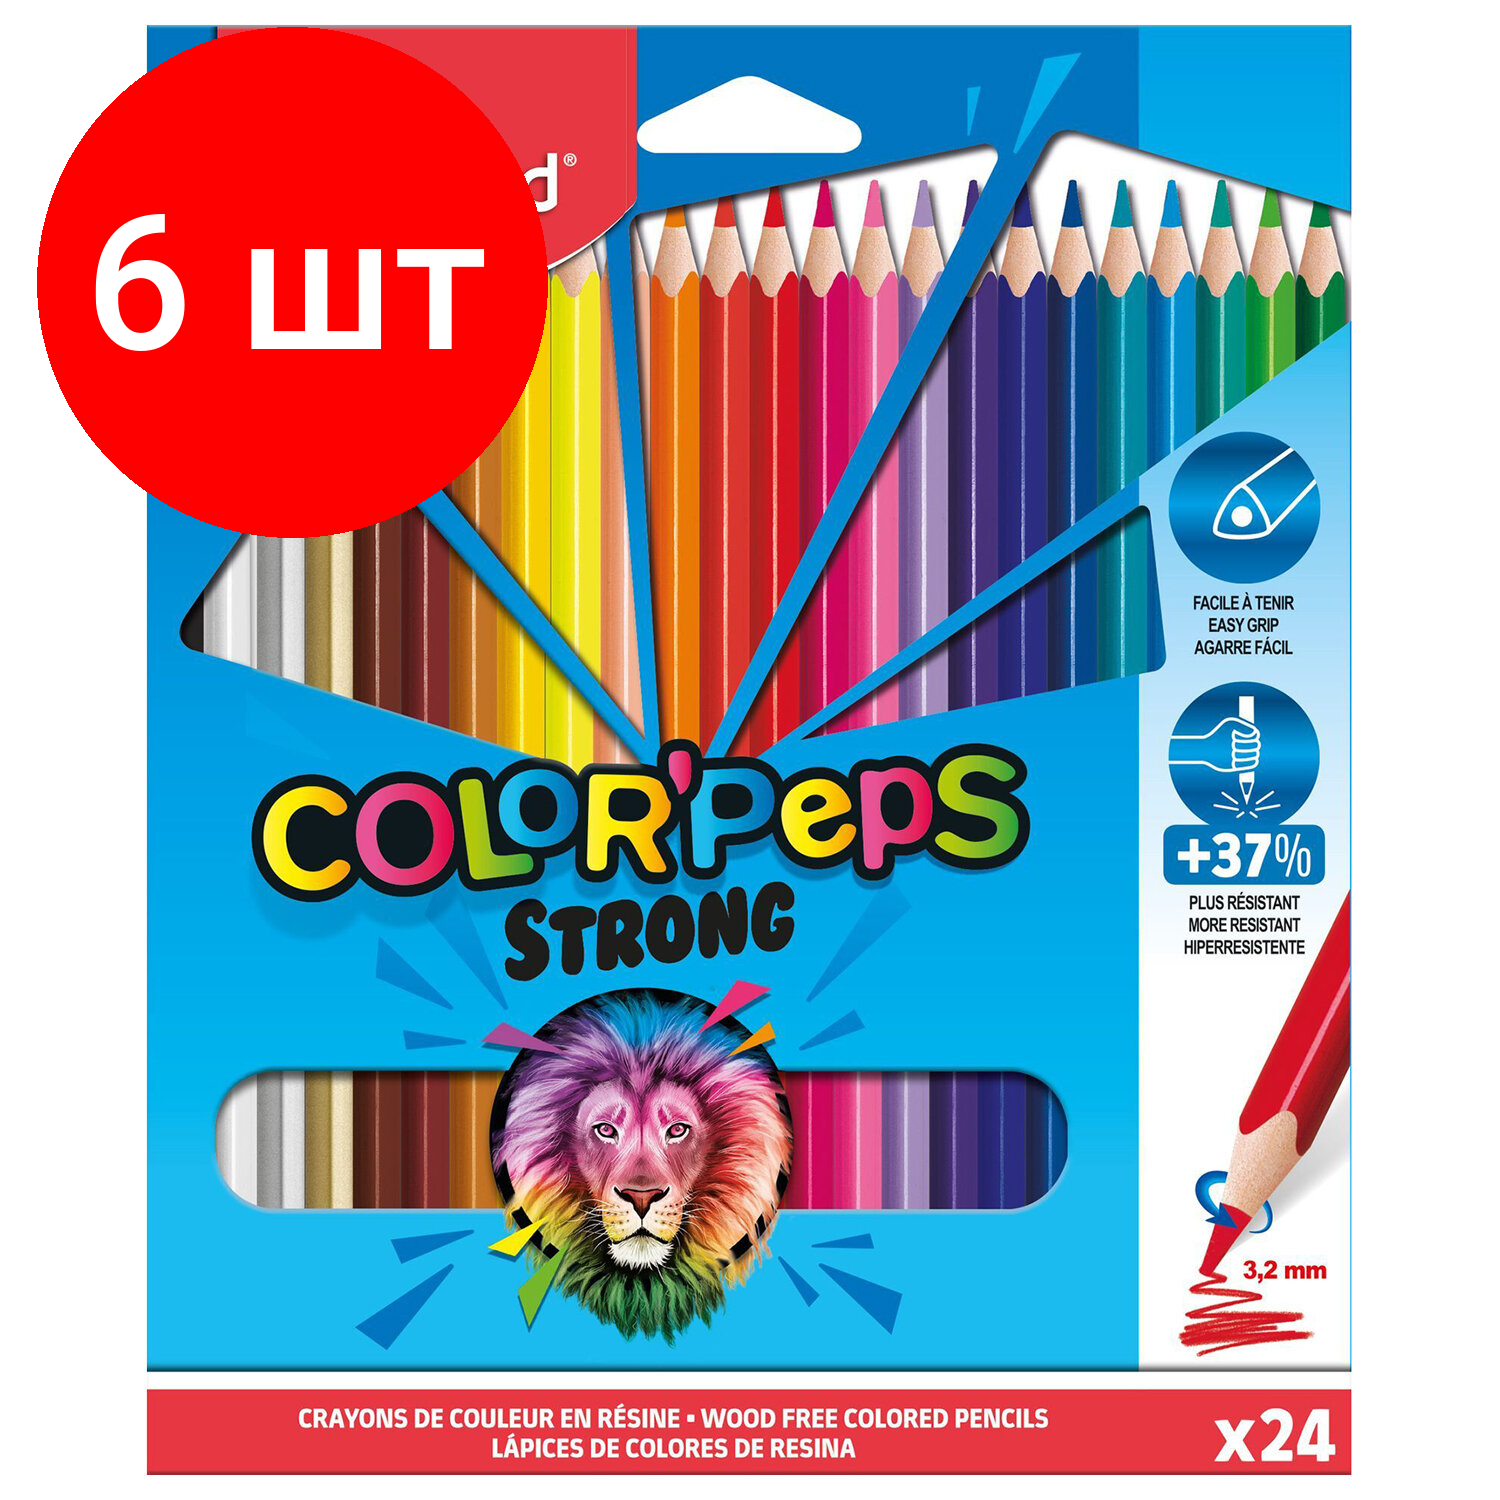 Комплект 6 шт, Карандаши цветные MAPED COLOR PEP'S Strong, набор 24 цвета, грифель 3.2мм, пластиков.корпус, 862724